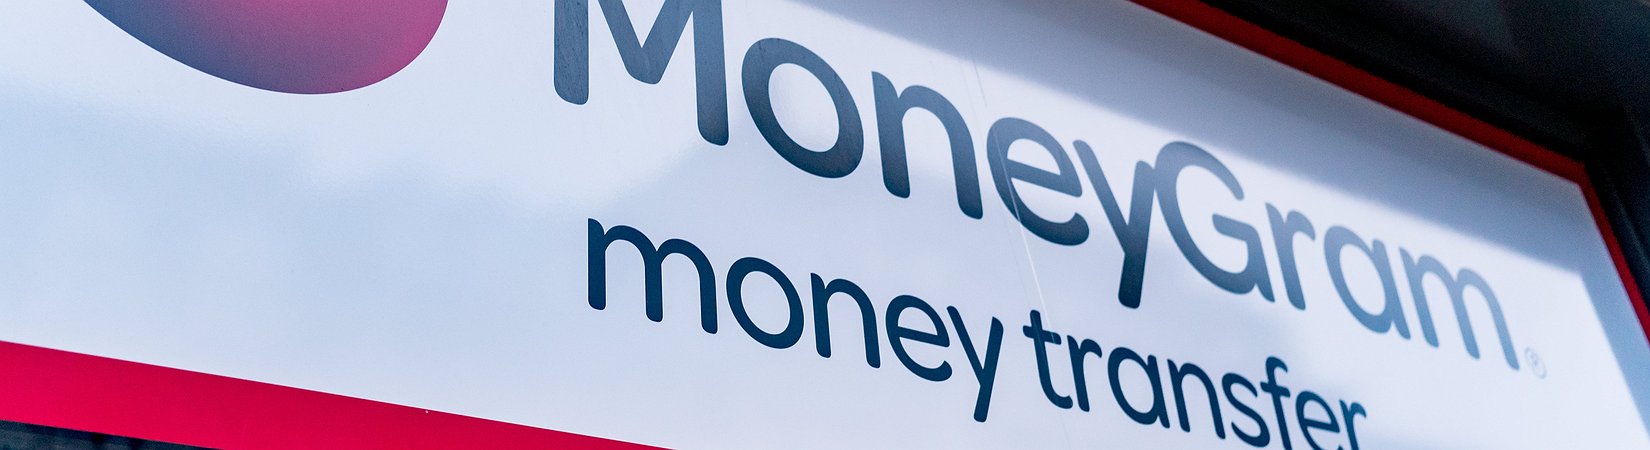 MoneyGram támogatja a kiskereskedelmi Bitcoin vásárlást az USA-ban | programok-budapest.hu